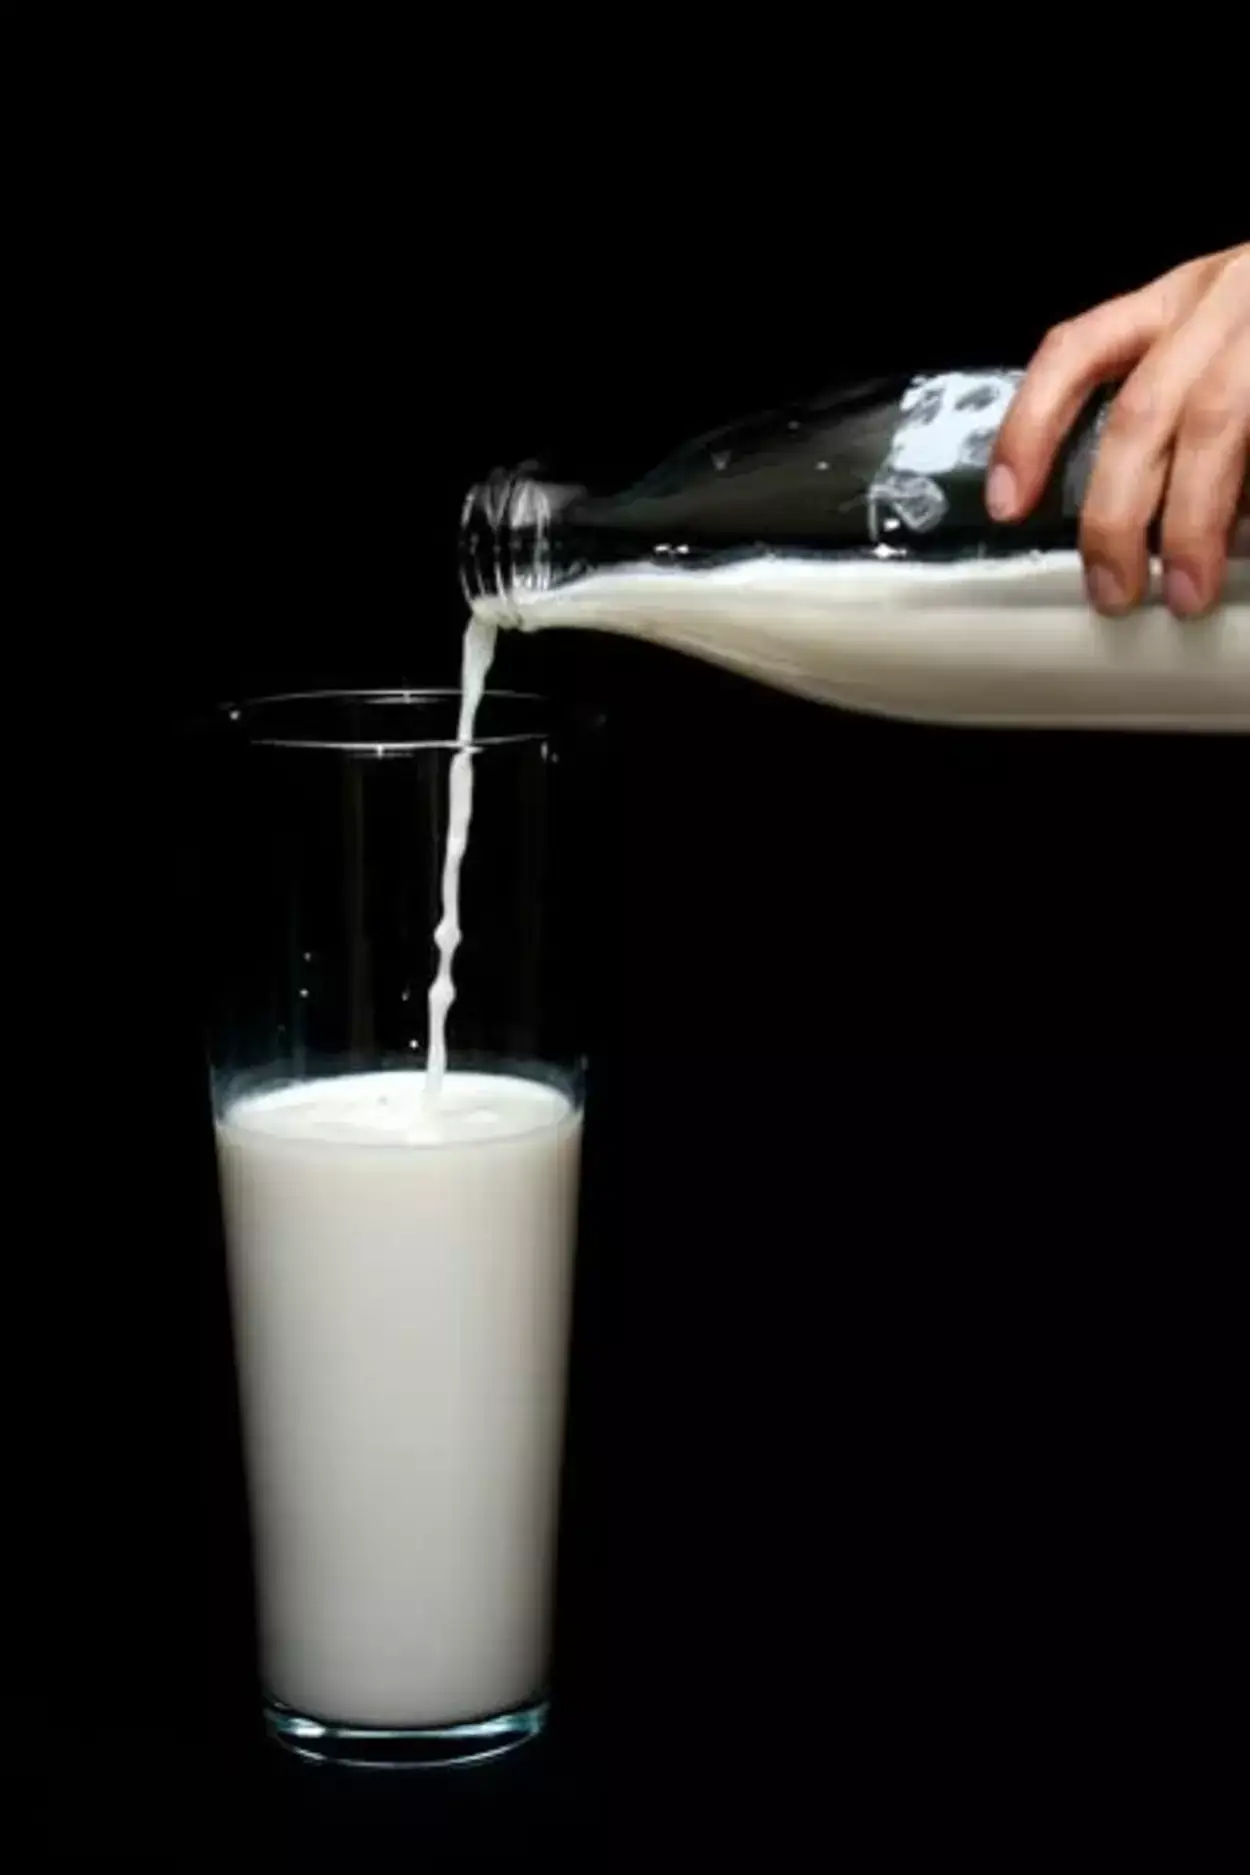  Cili është ndryshimi midis qumështit të vitaminës D dhe qumështit të plotë? (Shpjeguar) - Të gjitha ndryshimet